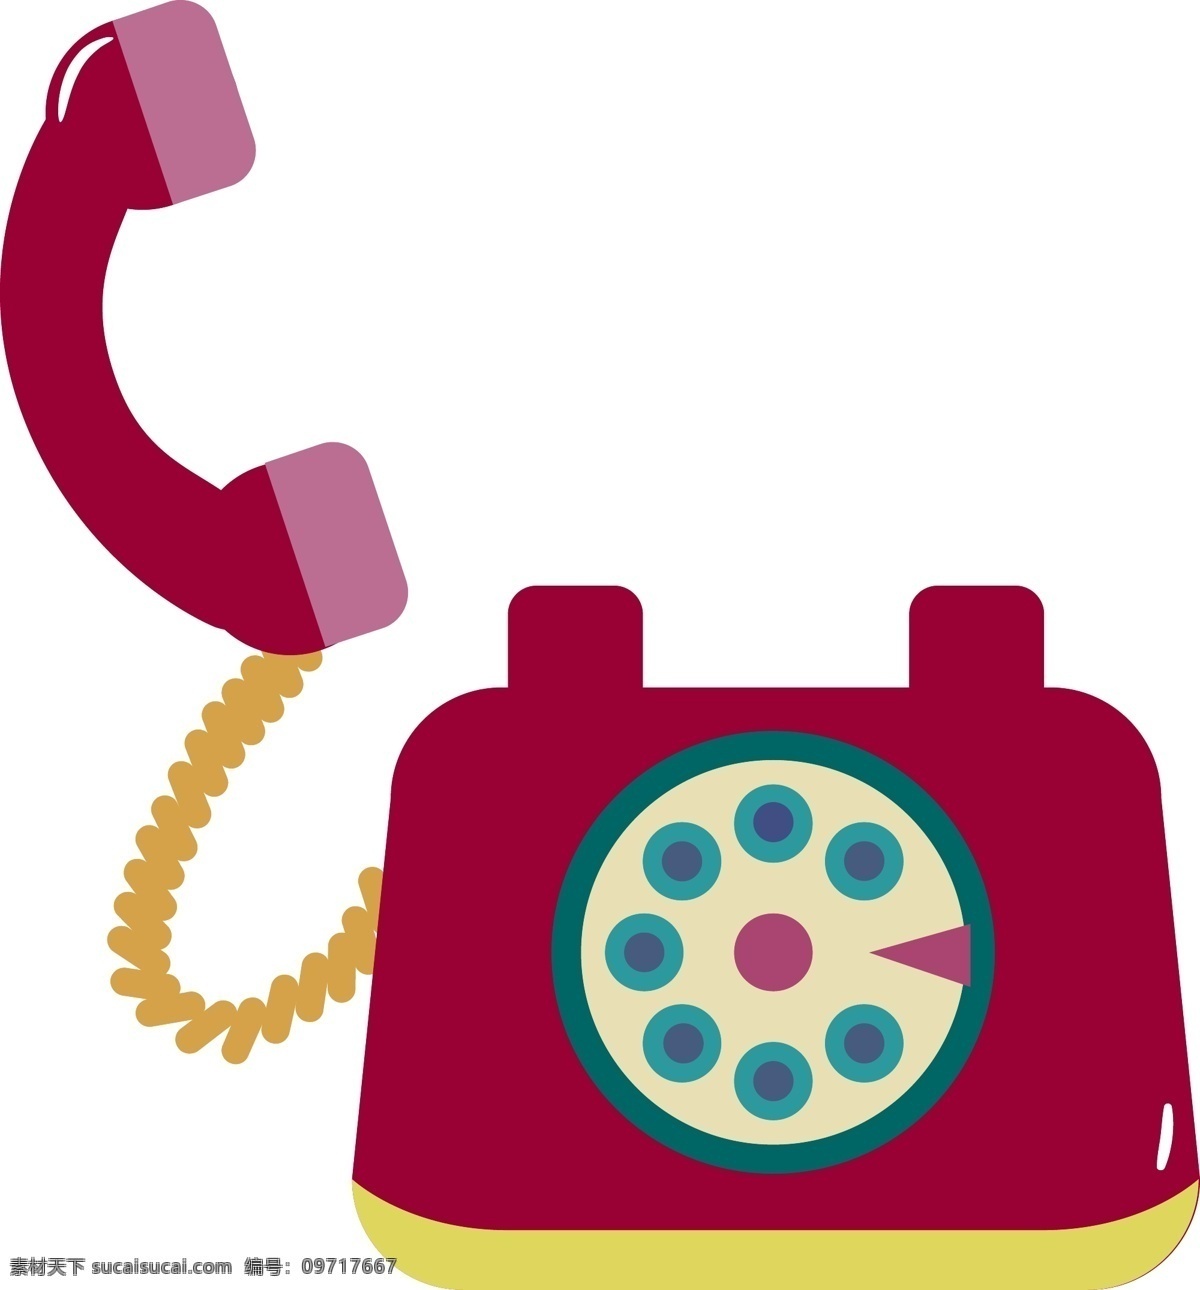 接听 电话 电话机 手机 拨打 图标 人 电话销售 支持 耳机 麦克风 电话营销 客户服务 呼叫服务 话务员 客服 手机拨打 拨出电话